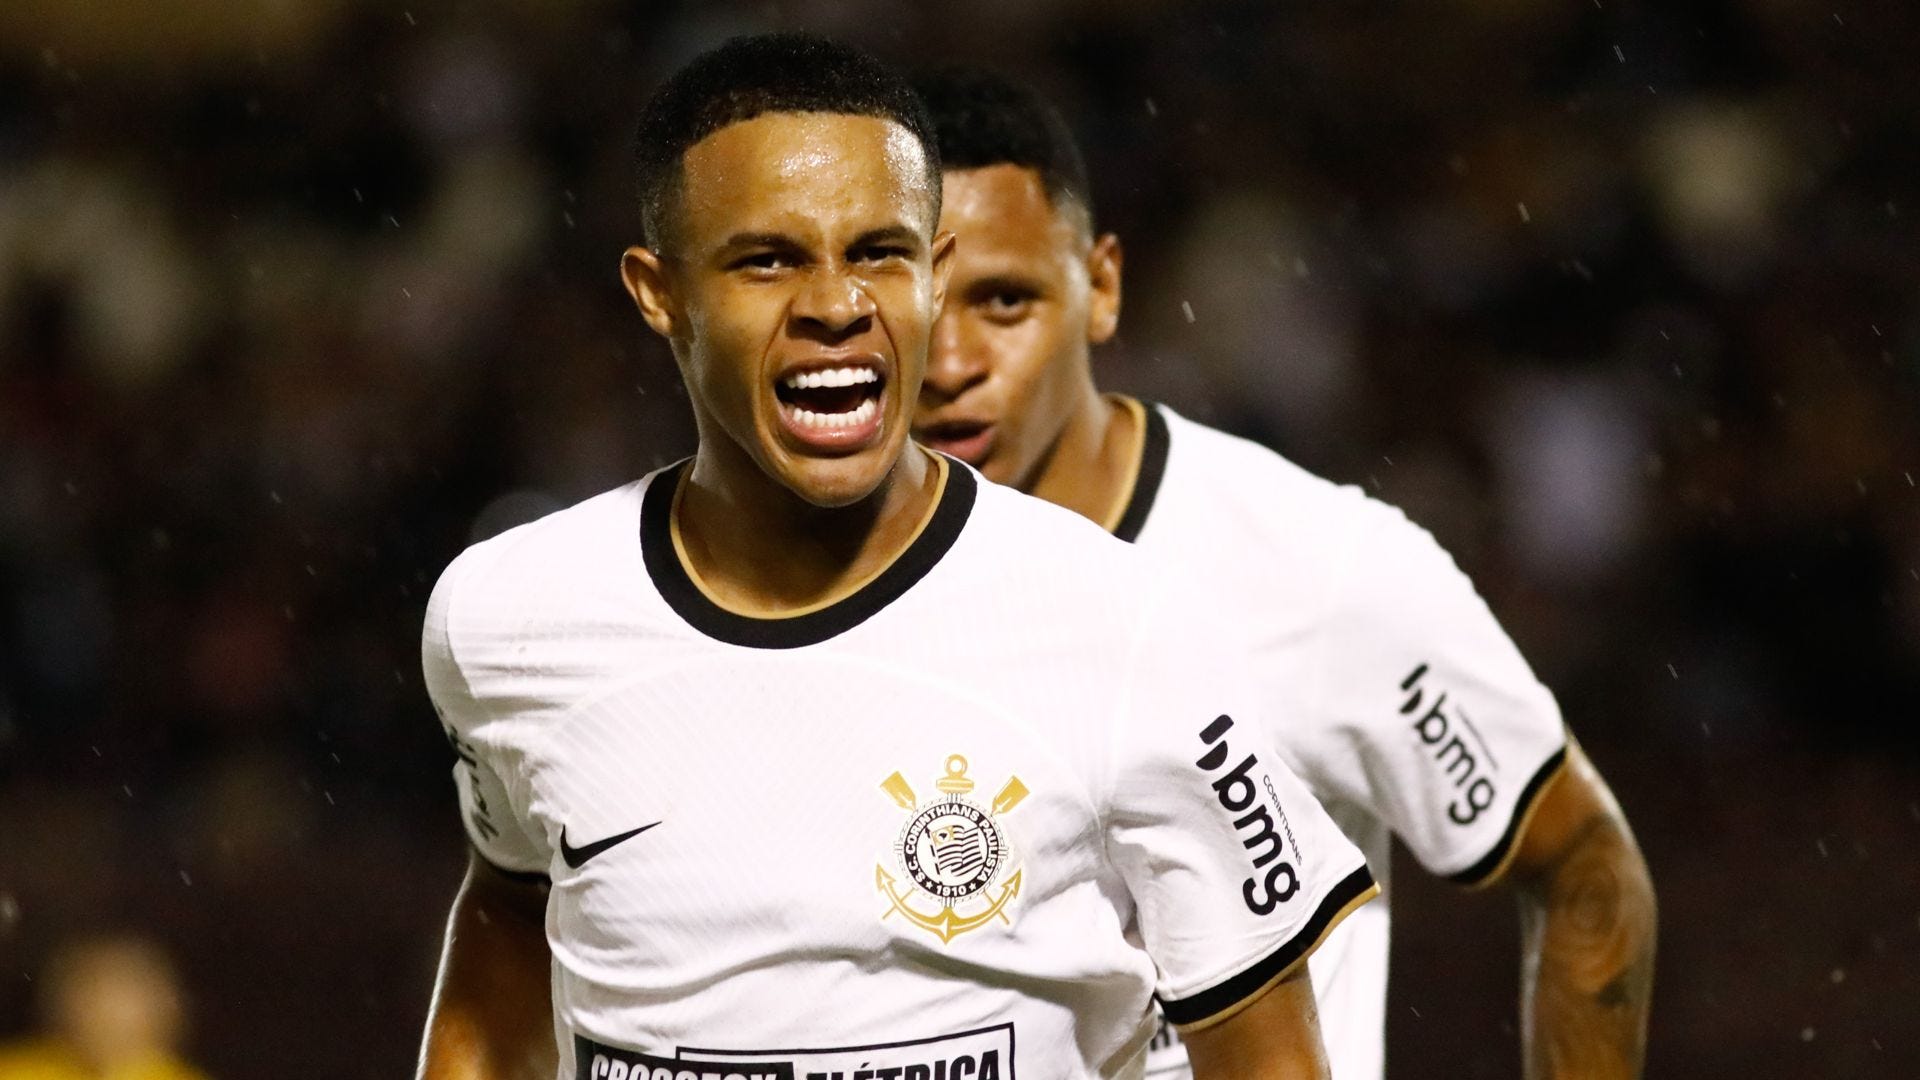 Corinthians empata com Internacional na segunda rodada do Brasileirão Sub-20